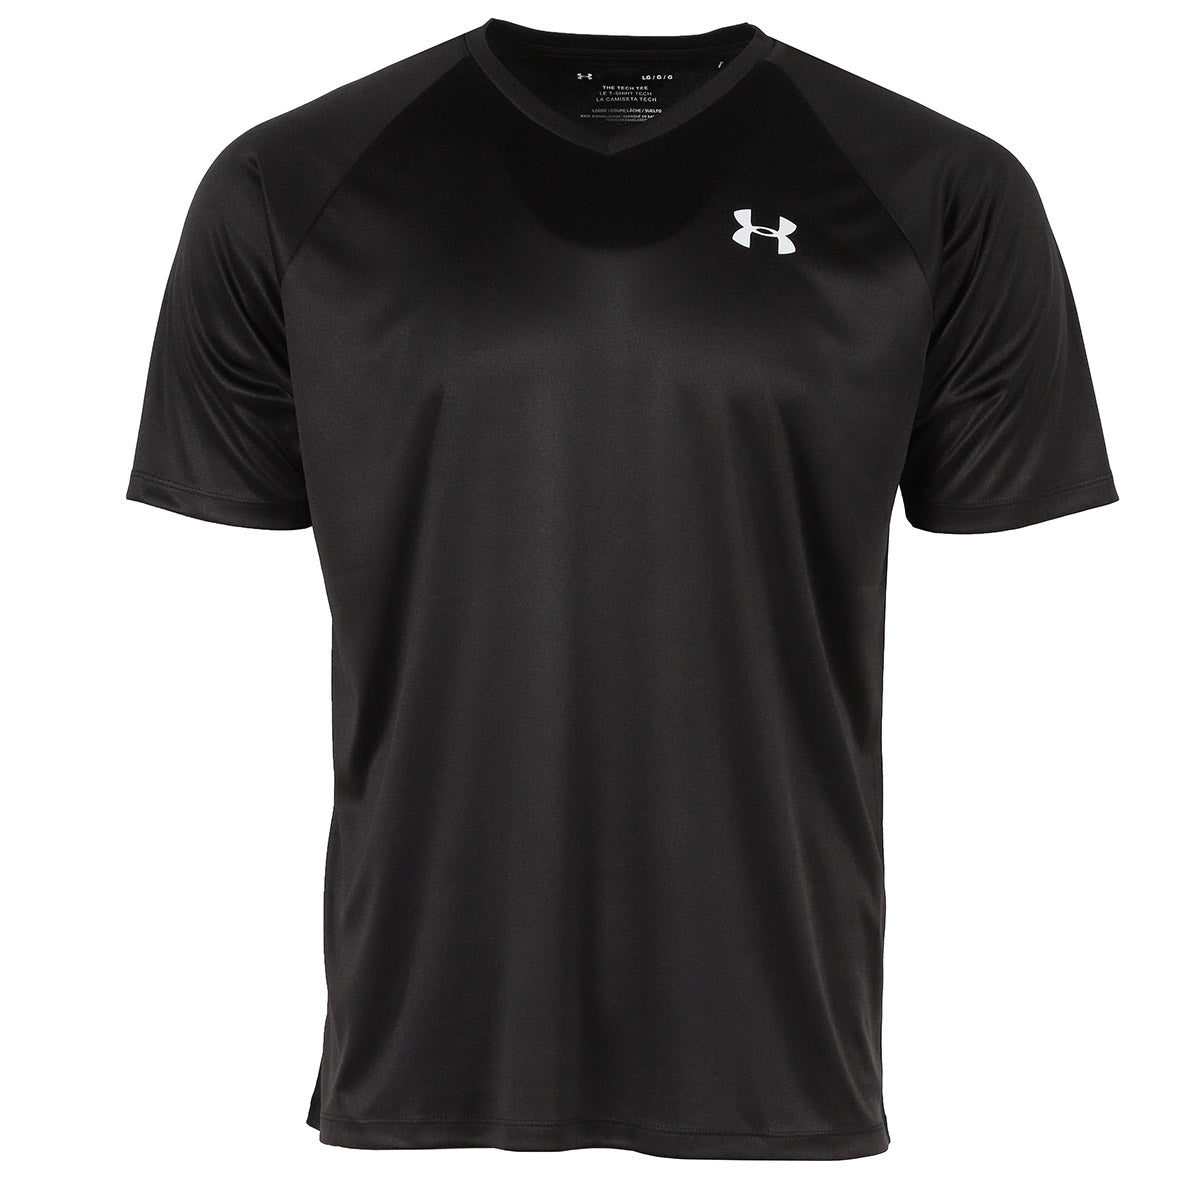 Image of Under Armour Men's UA Tech V-Neck Short Sleeve Shirt